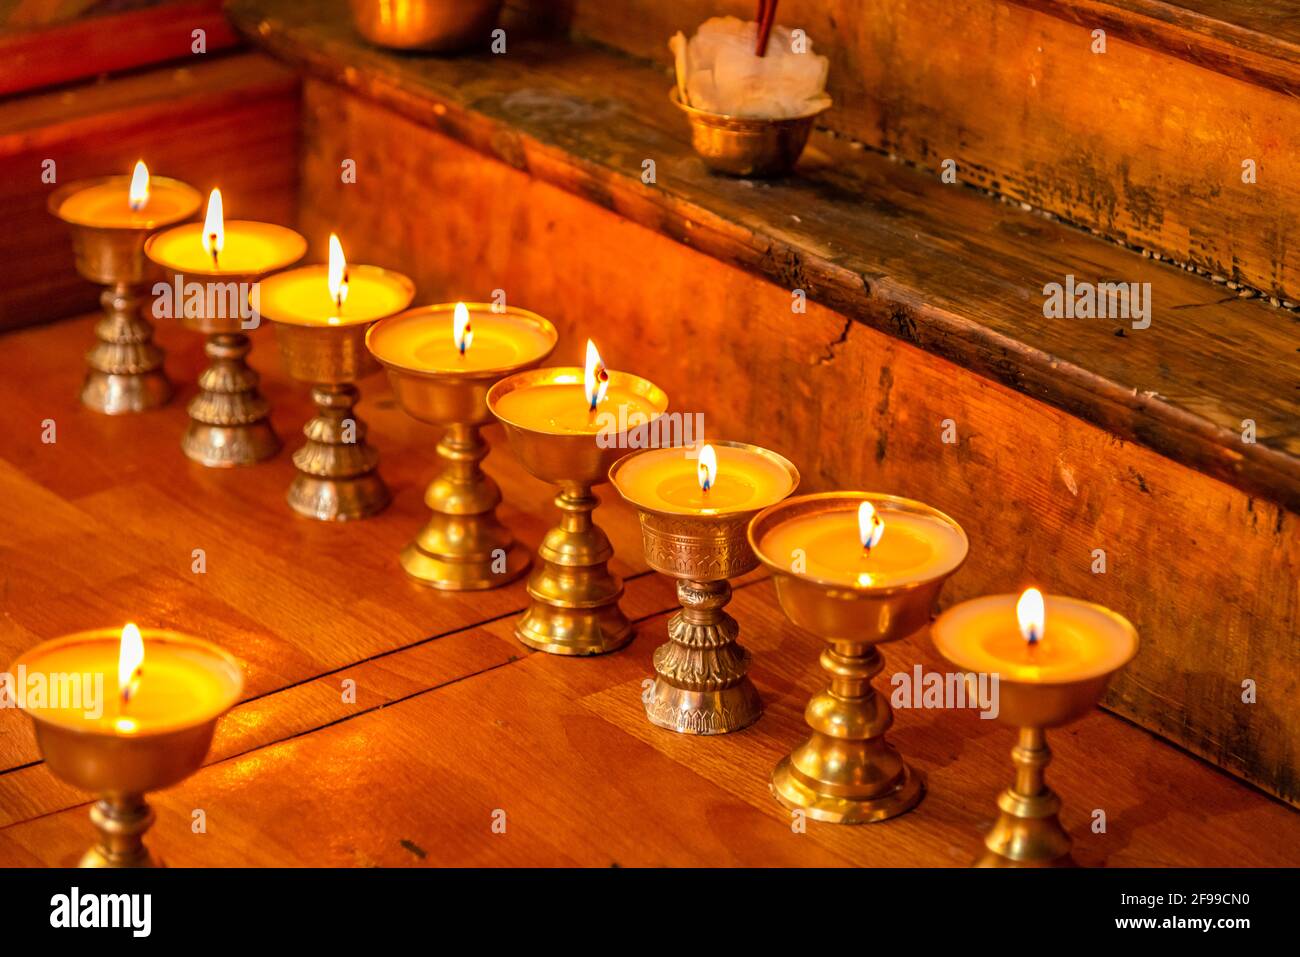 Diya di burro o lampade di ottone conservate nel buddista tibetano I templi e i monasteri sono una caratteristica evidente del buddismo tibetano Nell'Himalaya di Spiti Foto Stock